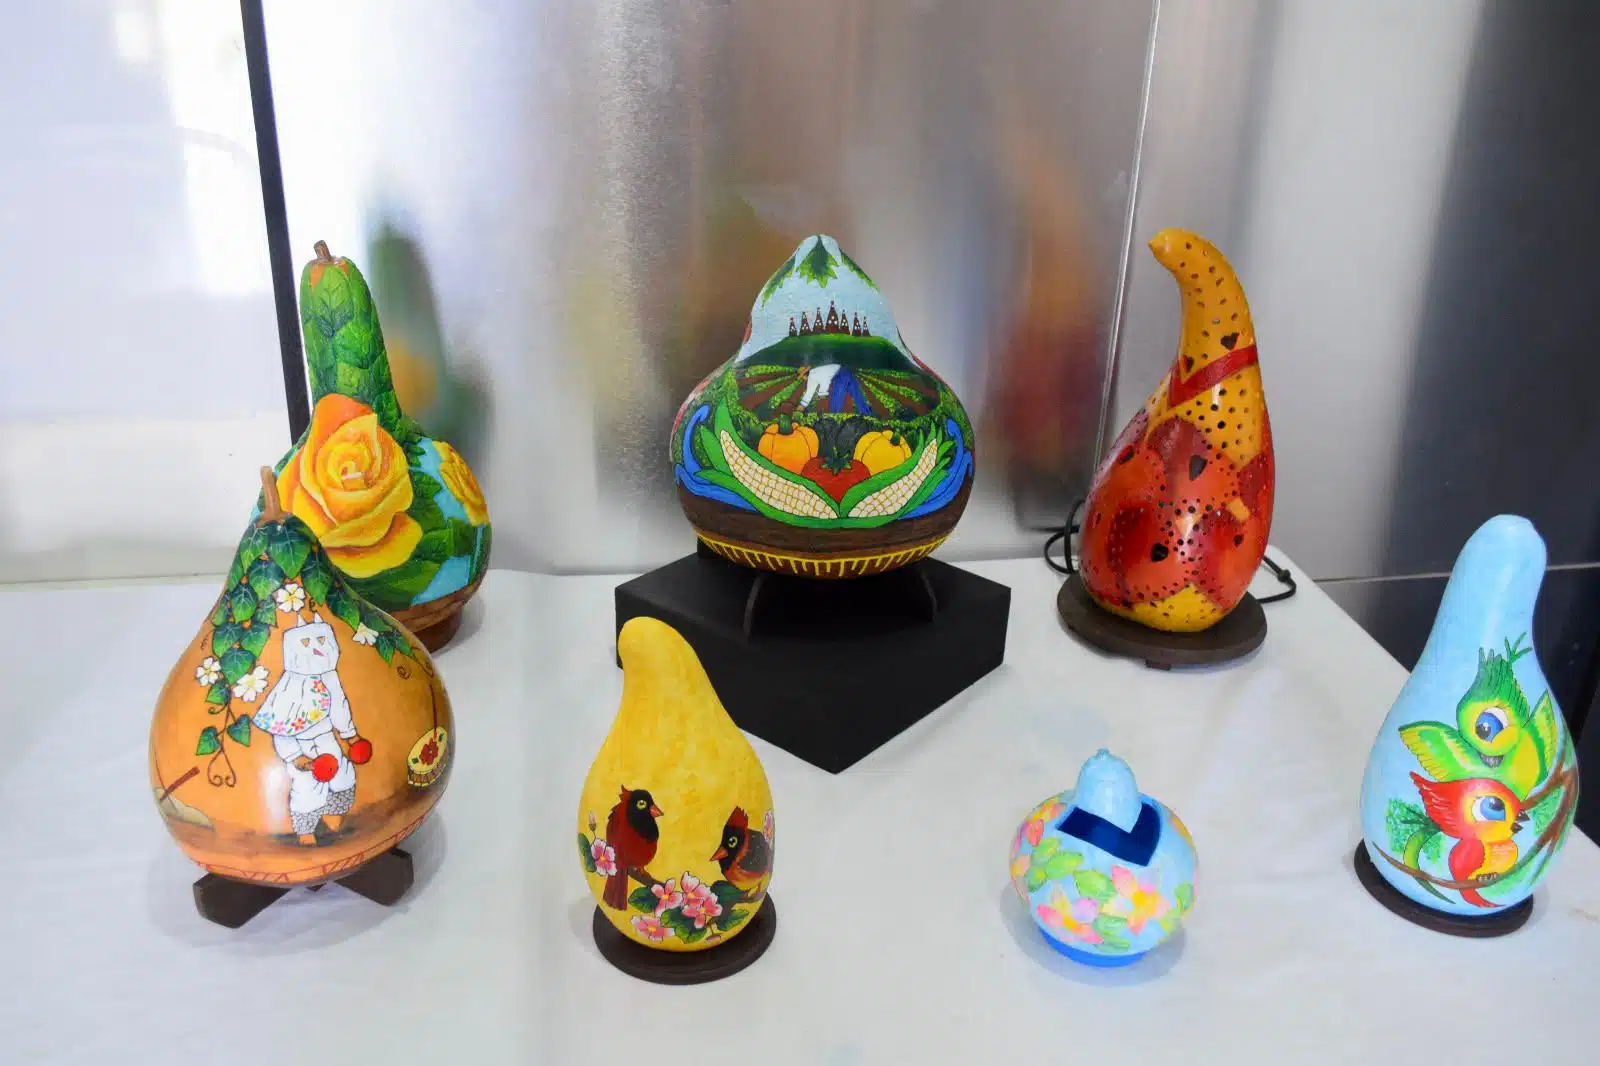 Esculturas de diversos colores en una exposición de arte